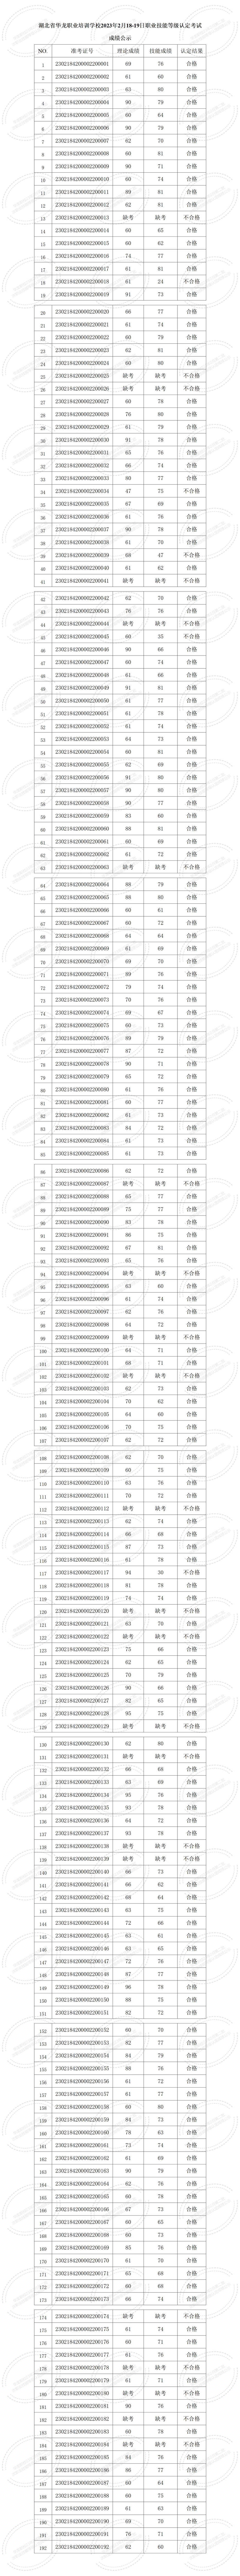 湖北省华龙职业培训学校2023年2月职业技能等级认定考试成绩公示 (2)_01